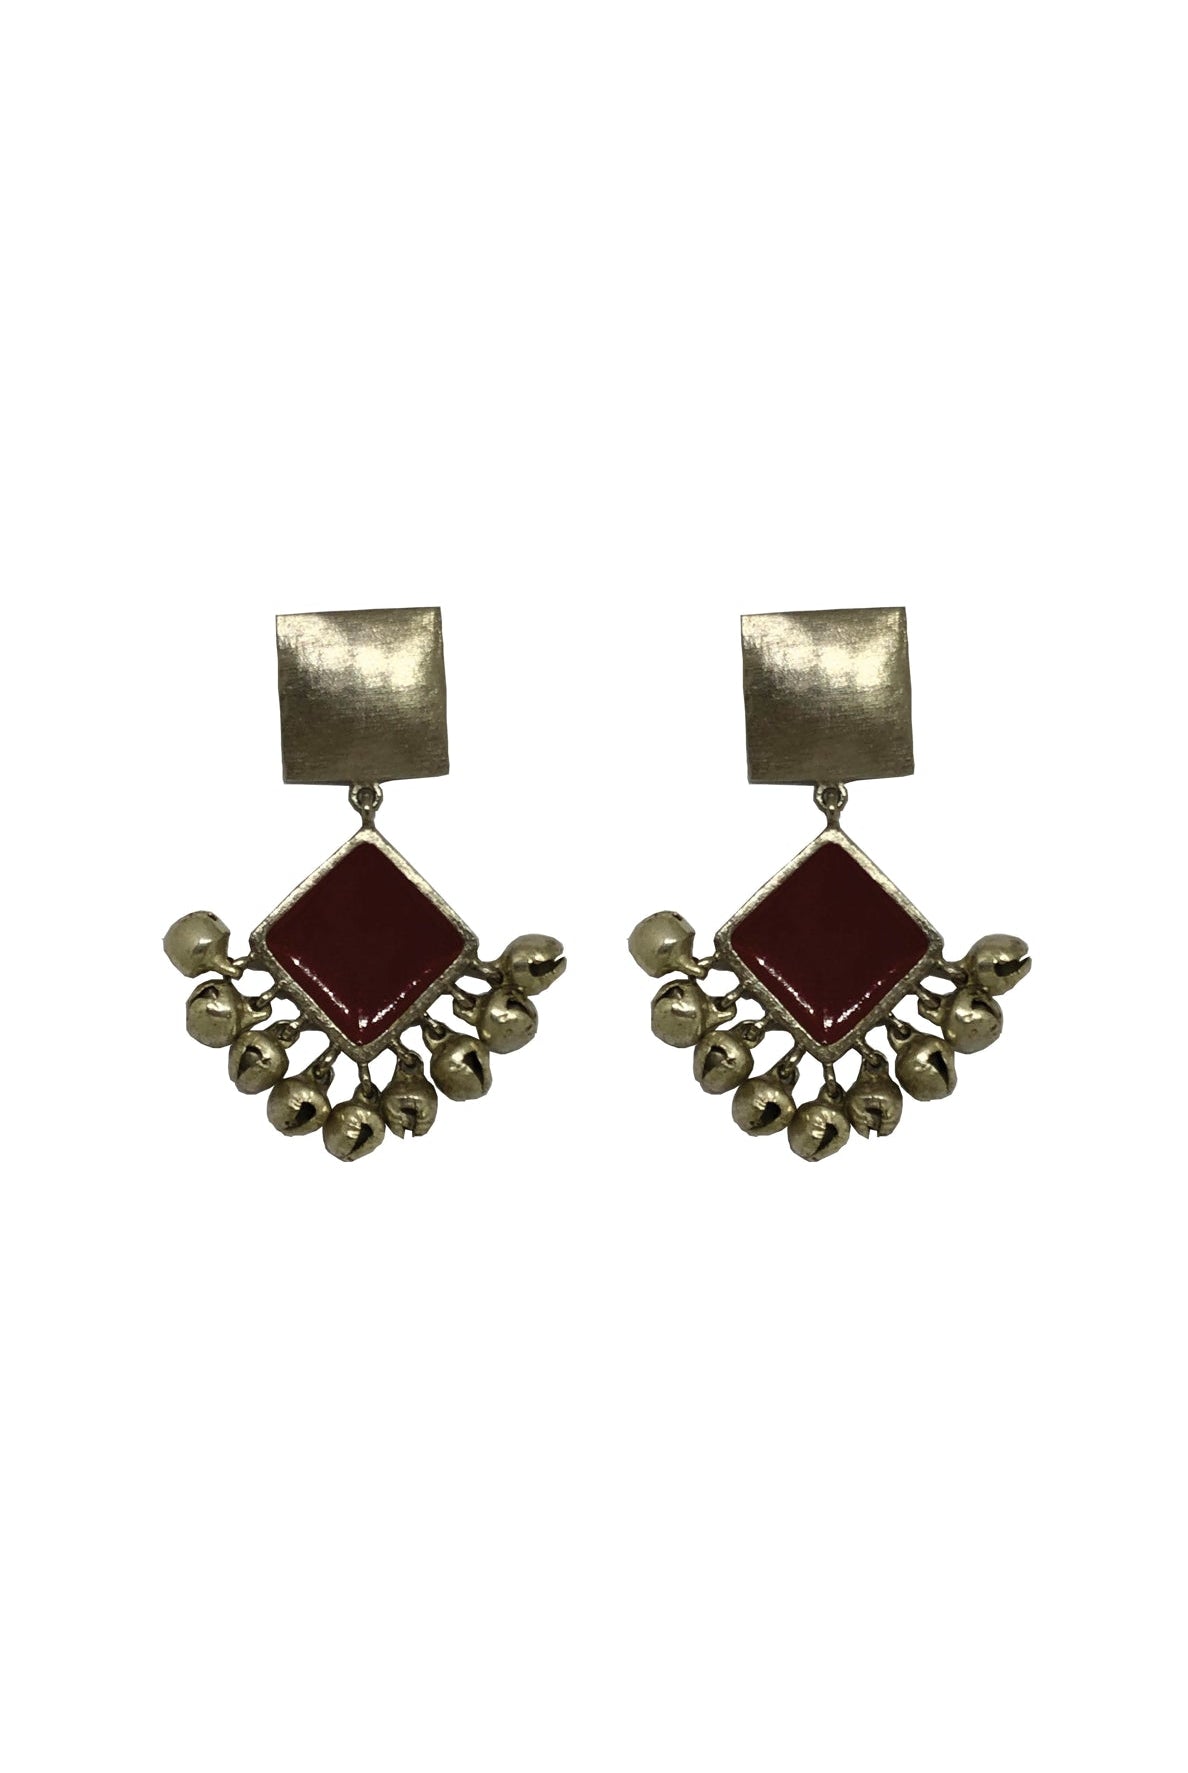 Two Tier Diamond Earrings - Maroon - CiceroniAaree